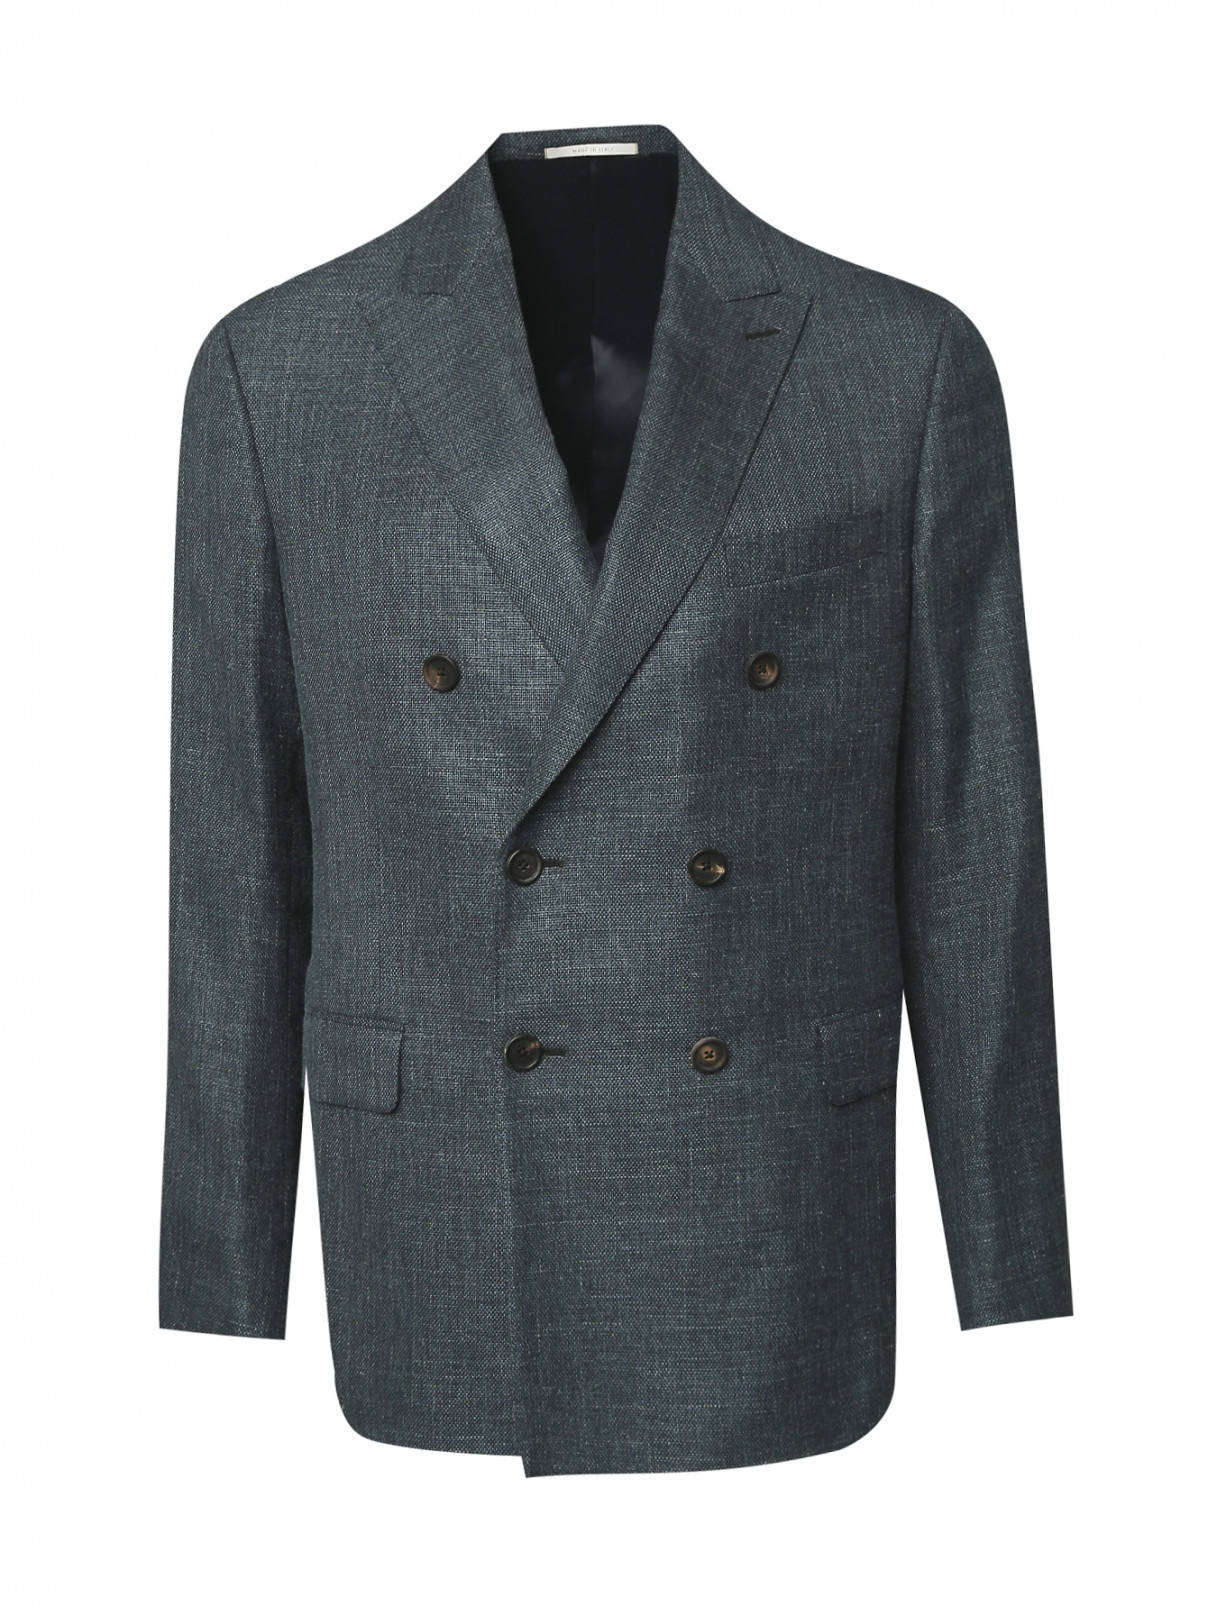 Пиджак двубортный из шерсти Pal Zileri  –  Общий вид  – Цвет:  Зеленый